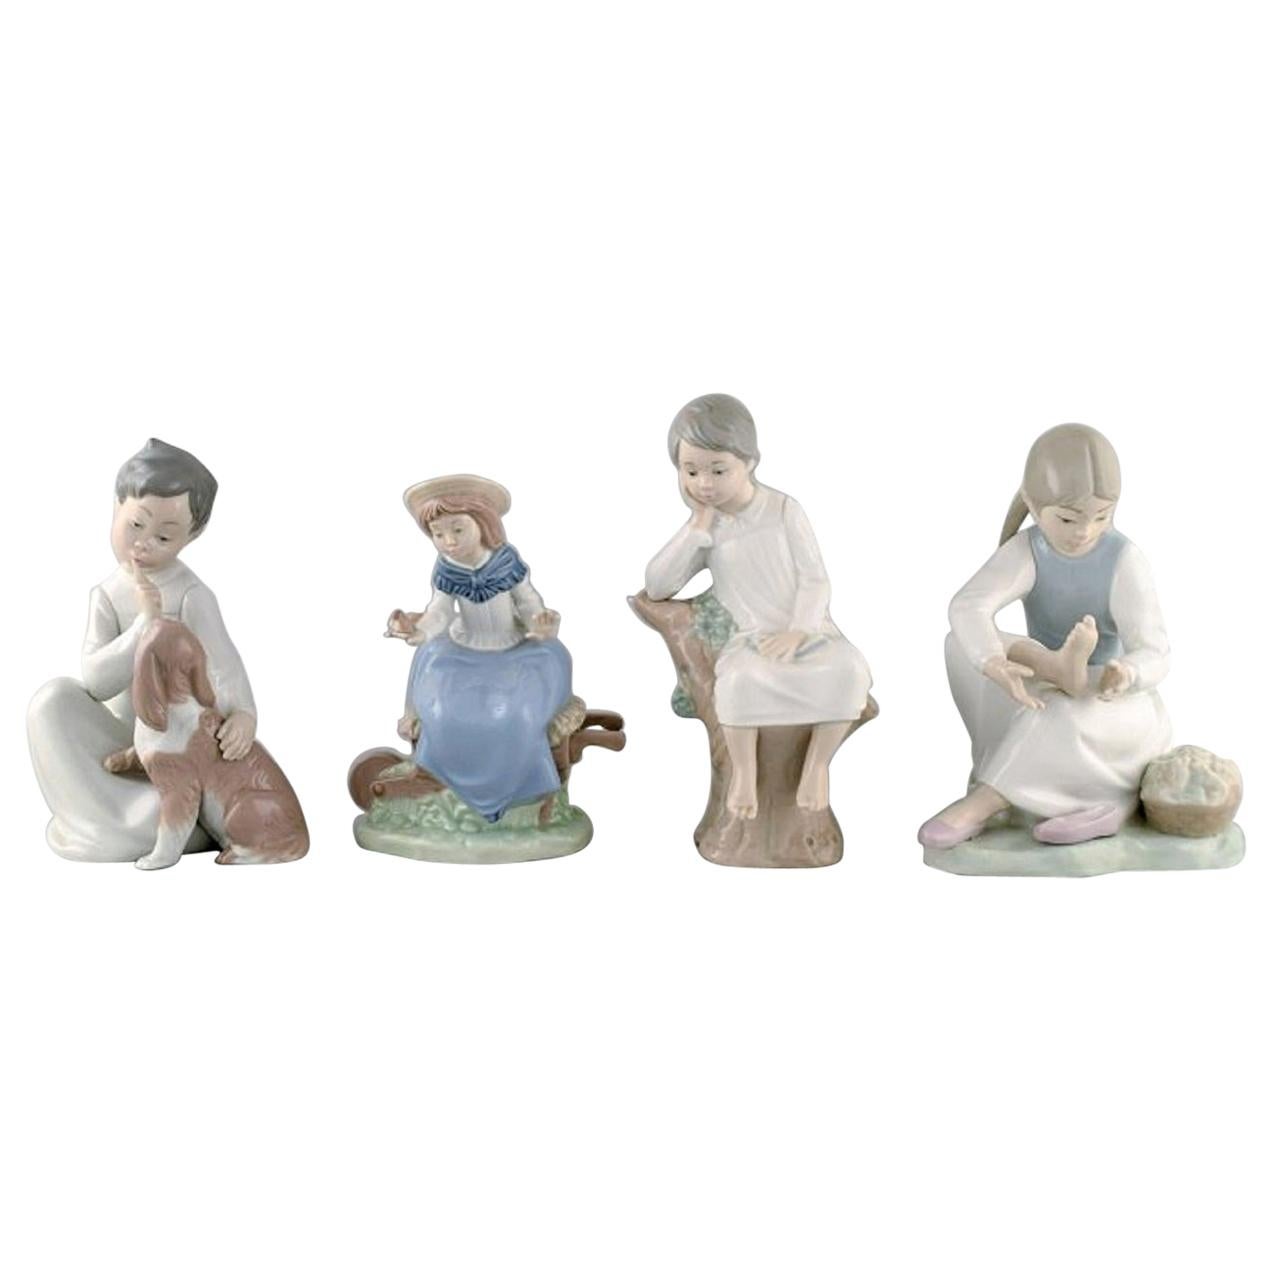 Quatre figurines d'enfants en porcelaine, Lladro et Nao, Espagne, années 1980-1990